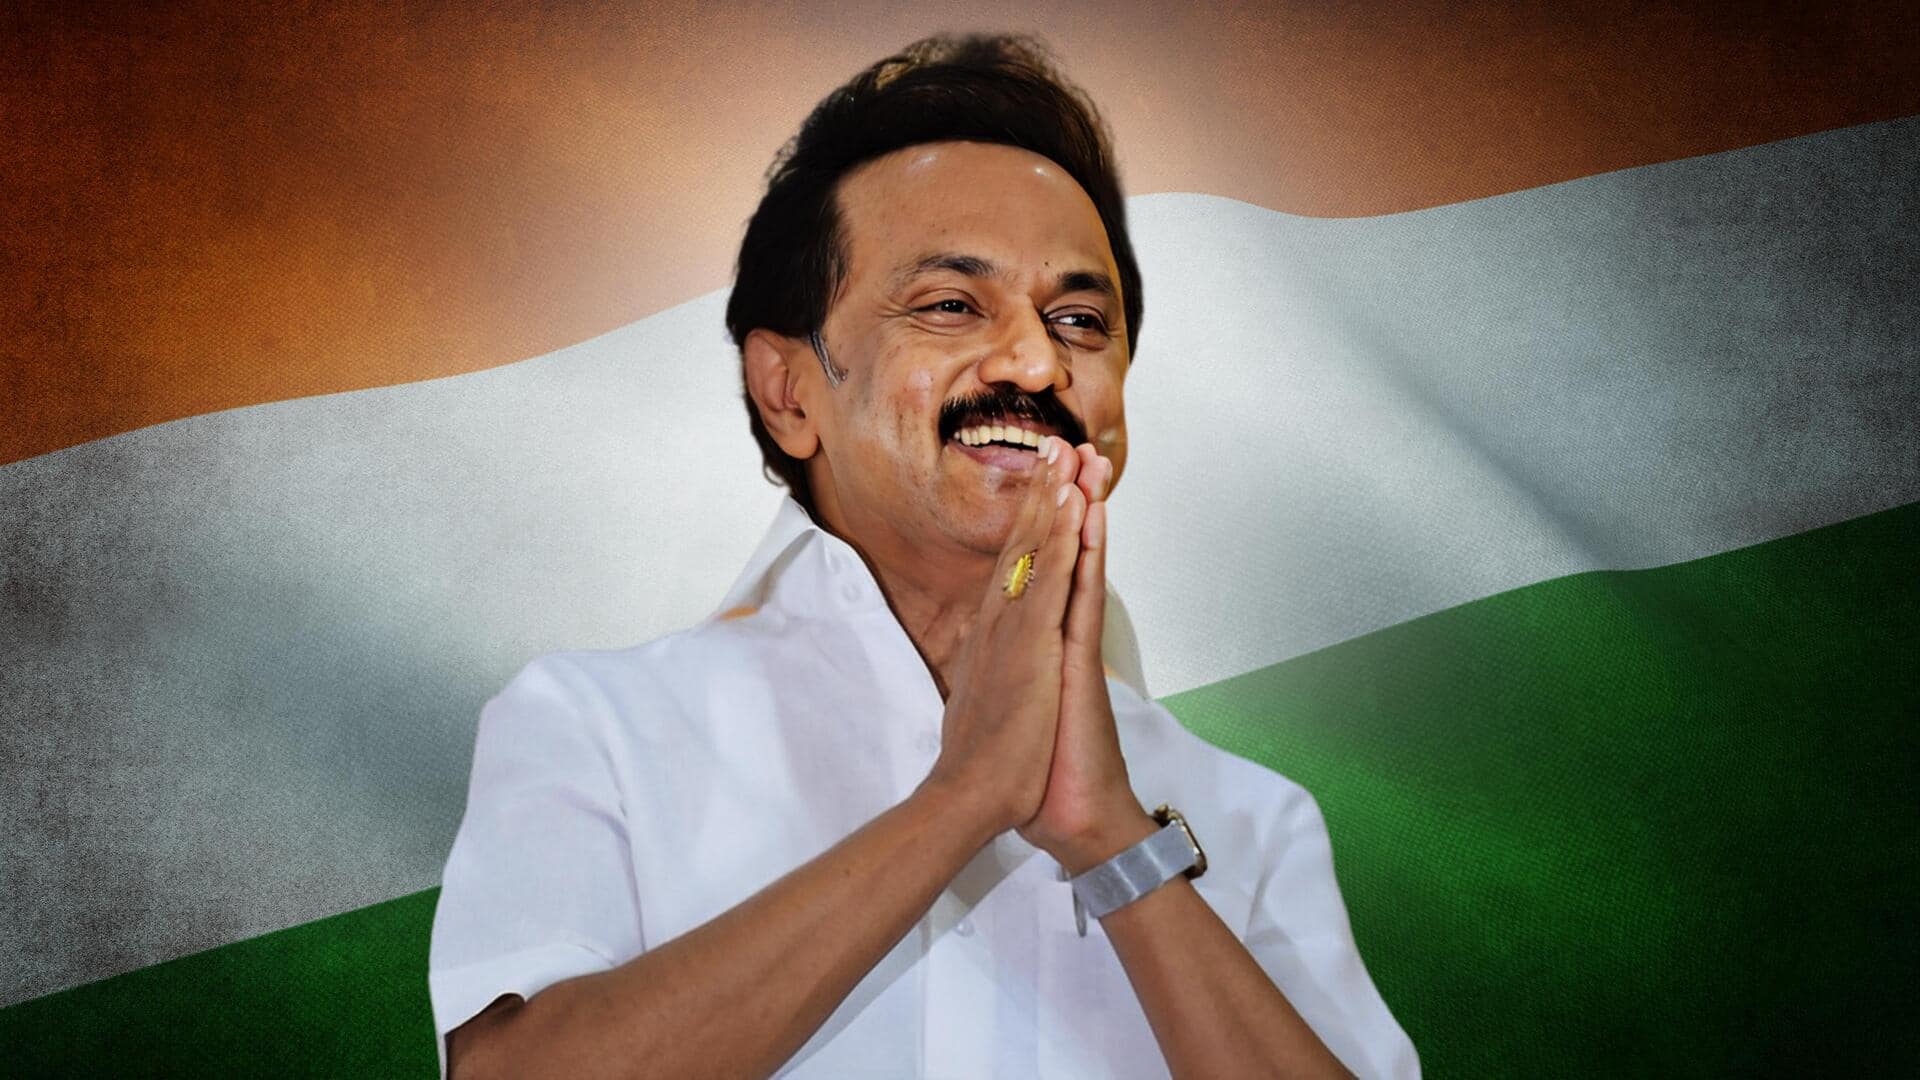 तमिलनाडु के मुख्यमंत्री बोले- INDIA का जीतना जरूरी, वर्ना पूरा देश मणिपुर और हरियाणा बन जाएगा